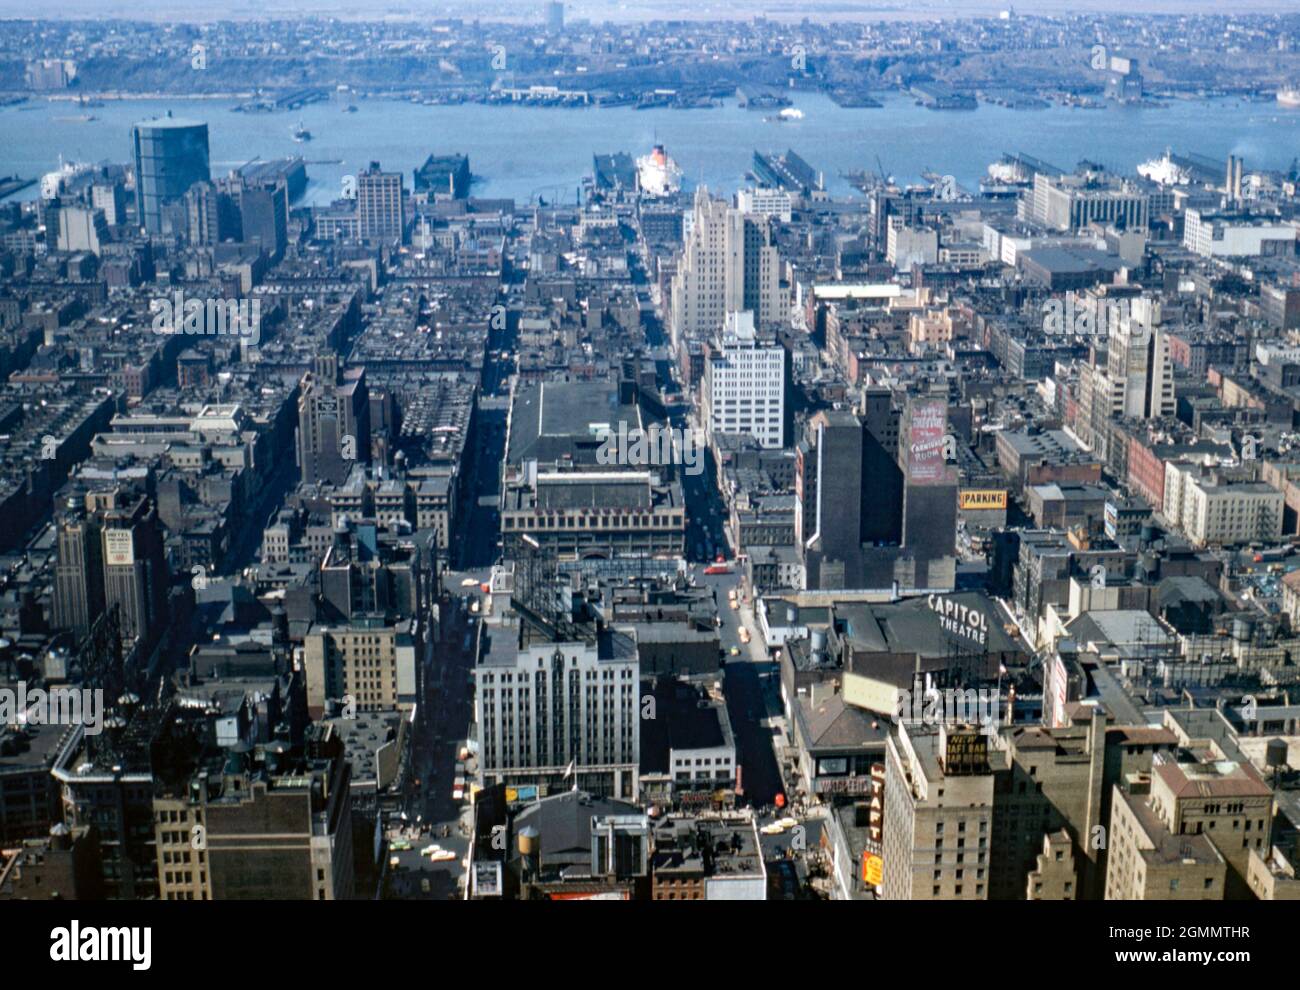 New York City, États-Unis – vue vers l’ouest sur la ville, en direction de l’Hudson River et des quais de la ville c. 1954. La rue qui traverse de gauche à droite en premier plan est Broadway avec un signe pour le théâtre Capitol (notez l'orthographe britannique du signe) haut au-dessus du niveau de la rue. Un paquebot est amarré au port sur l'une des jetées. Cette image provient d'une ancienne transparence couleur Kodak prise par un photographe amateur, une photographie vintage des années 1950. Banque D'Images